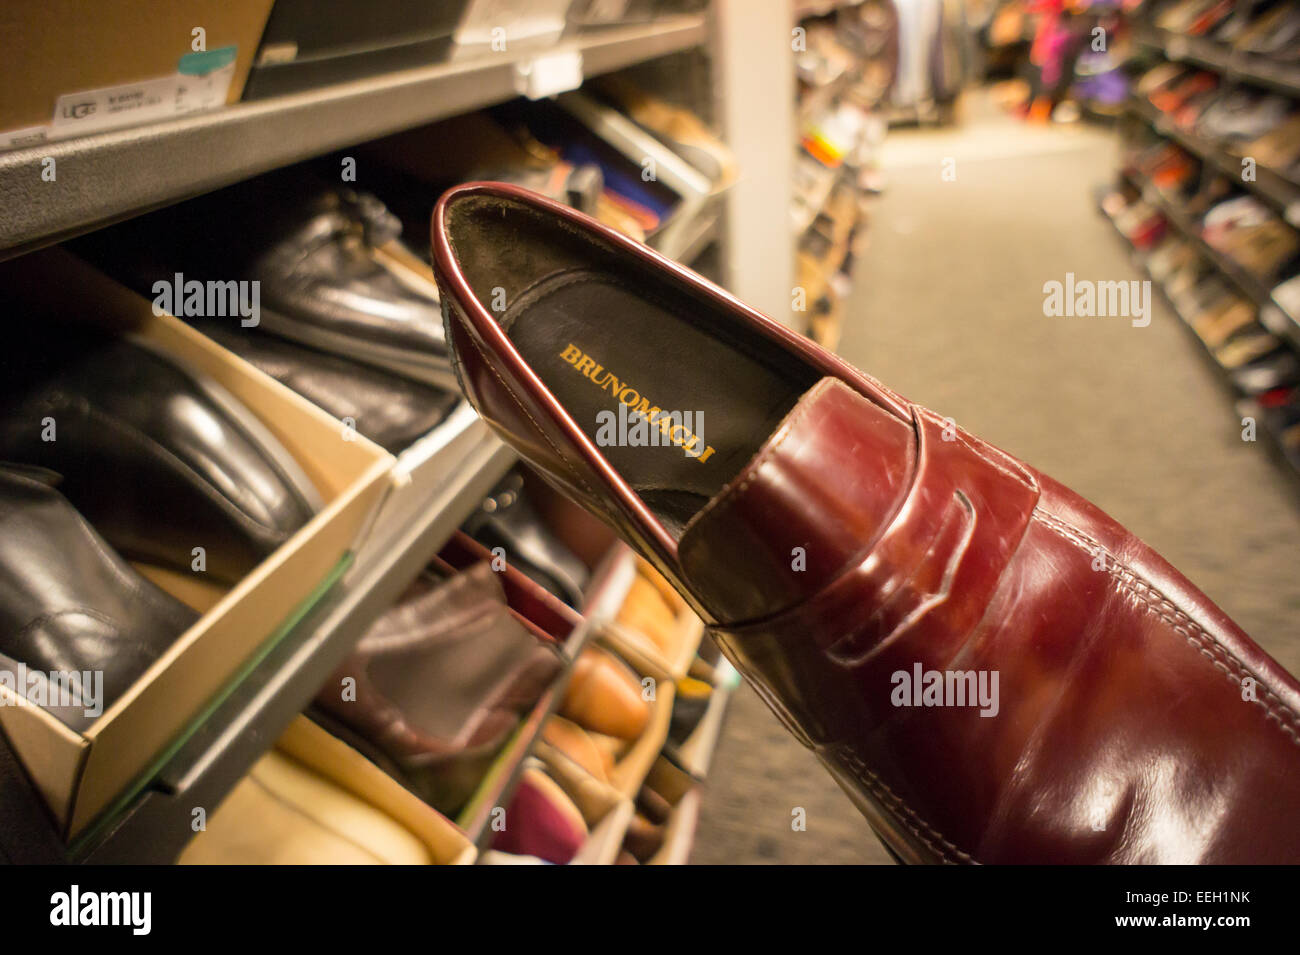 Bruno Magli zapatos de marca son vistos en una tienda de zapatos en Nueva  York el martes, 13 de enero de 2015. El zapatero de lujo italiana, en  actividad desde 1936, está